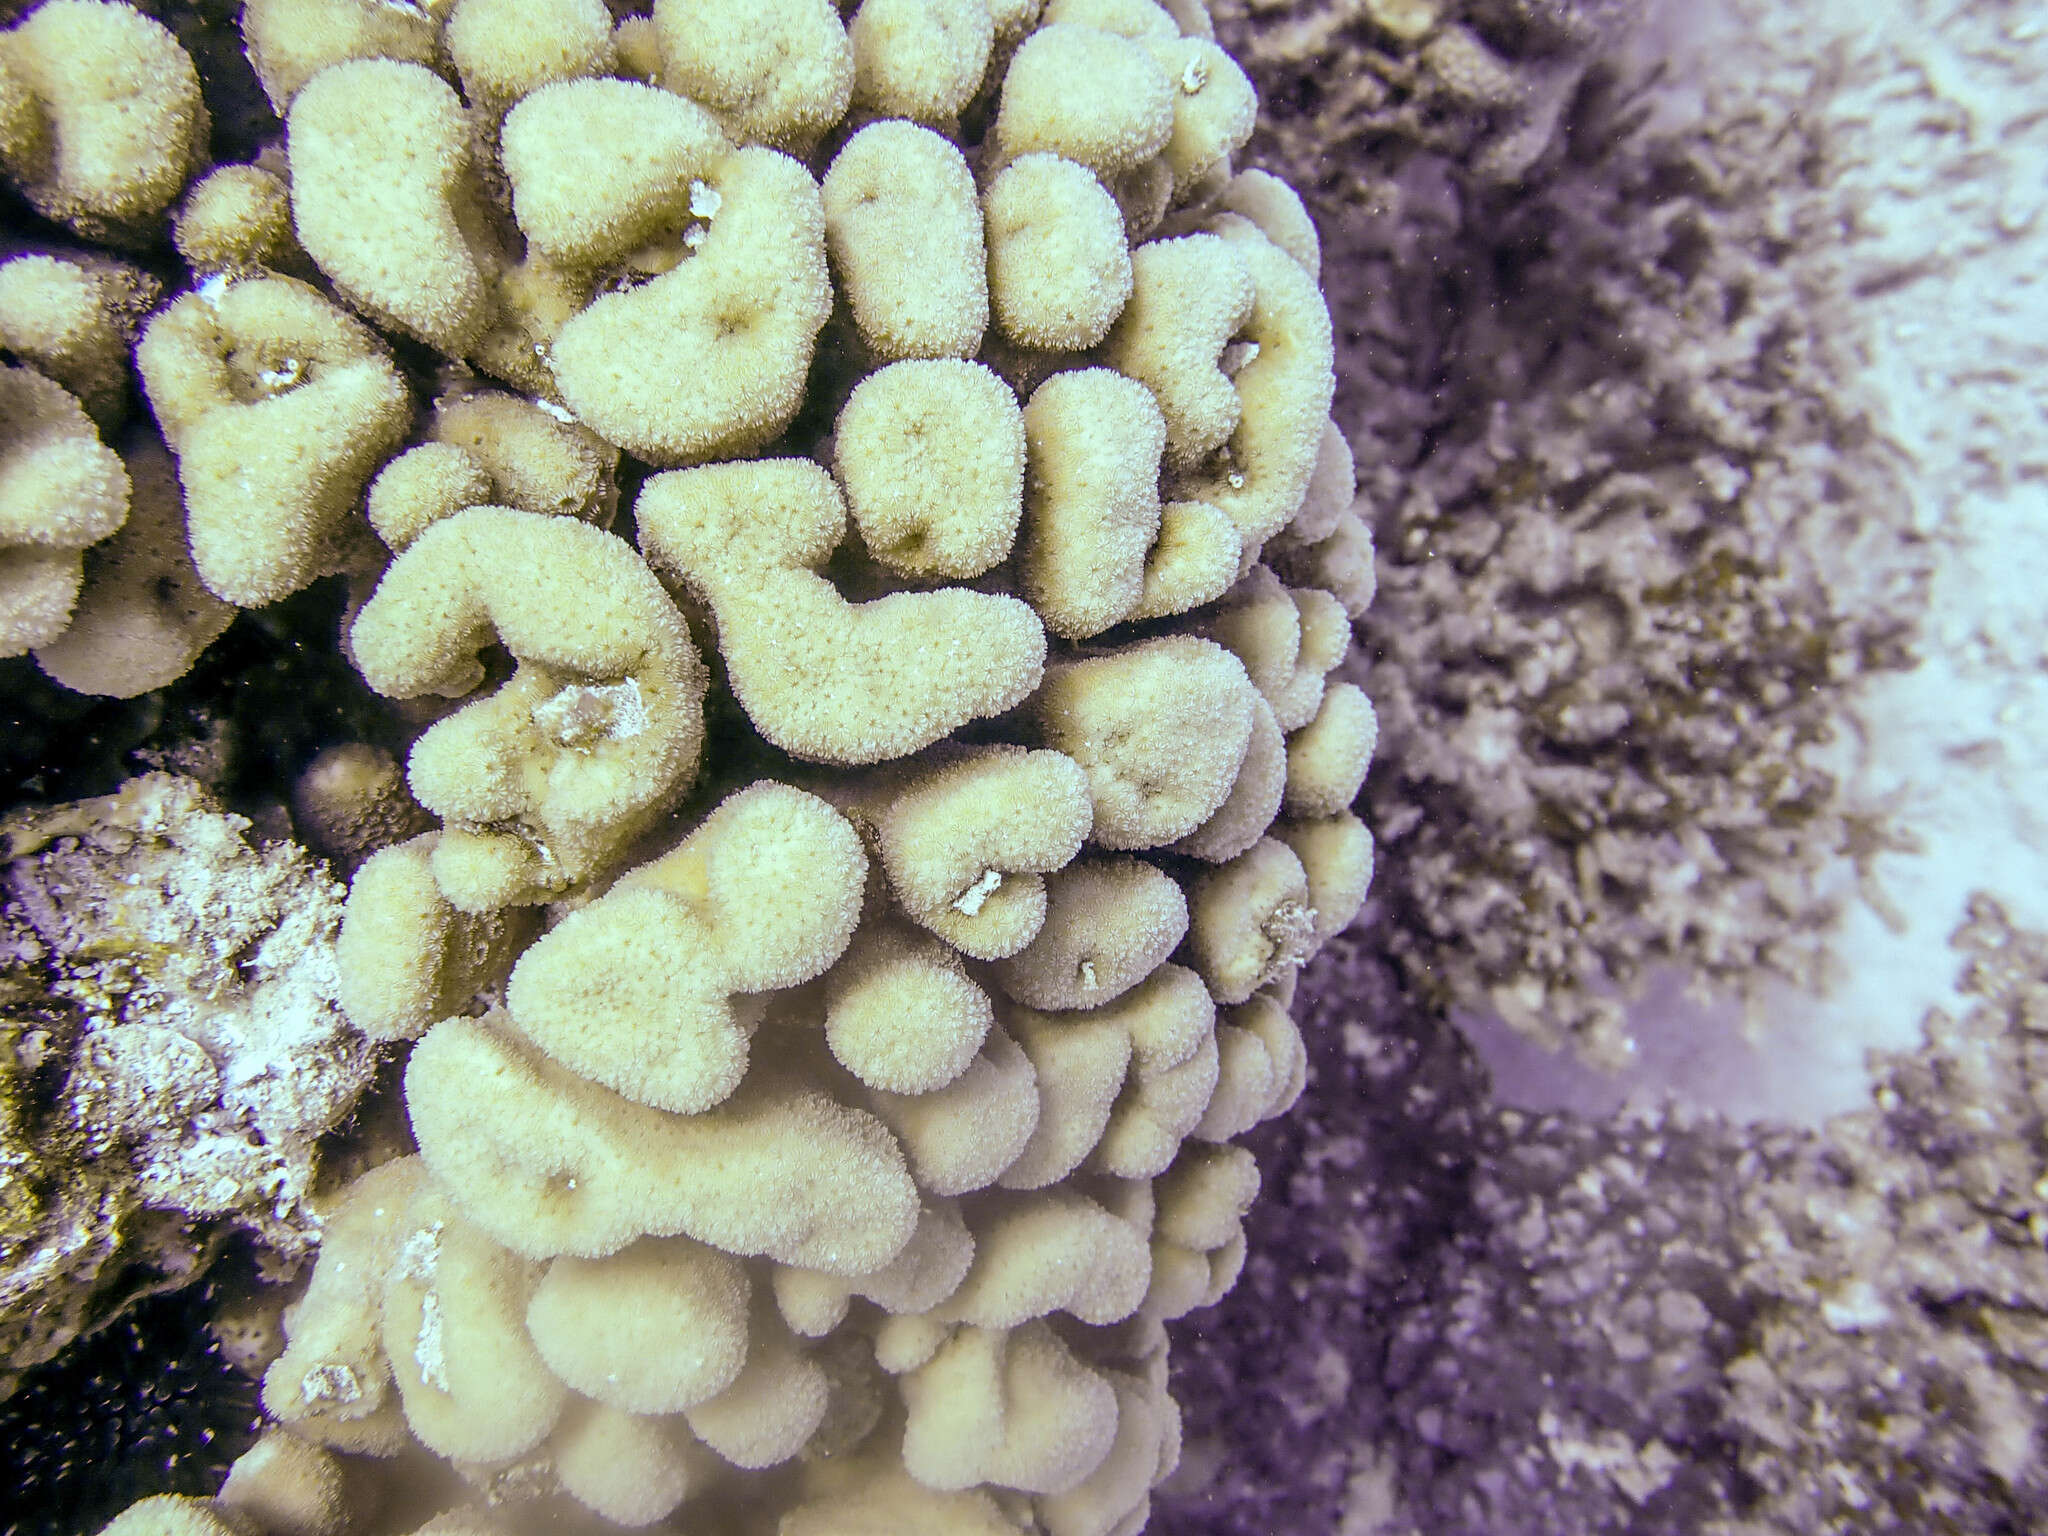 Image of leaf coral